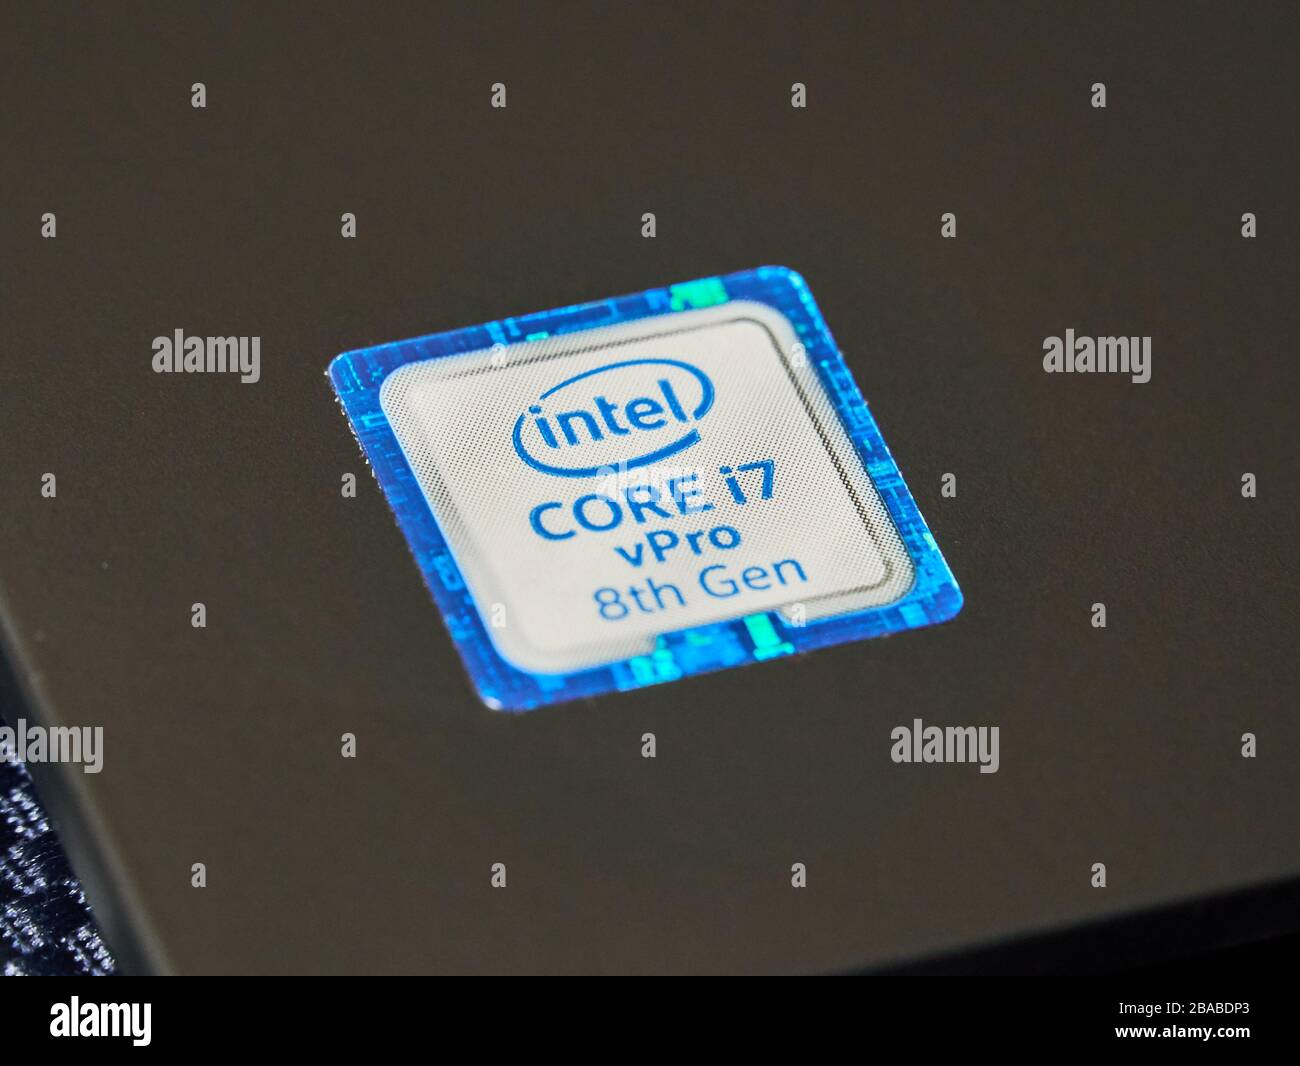 Montreal, Kanada - 17. März 2020: Bezeichnung der Intel Mobile CPU-Zentraleinheit i7 8. Generation. Intel ist ein amerikanisches multinationales Unternehmen Stockfoto